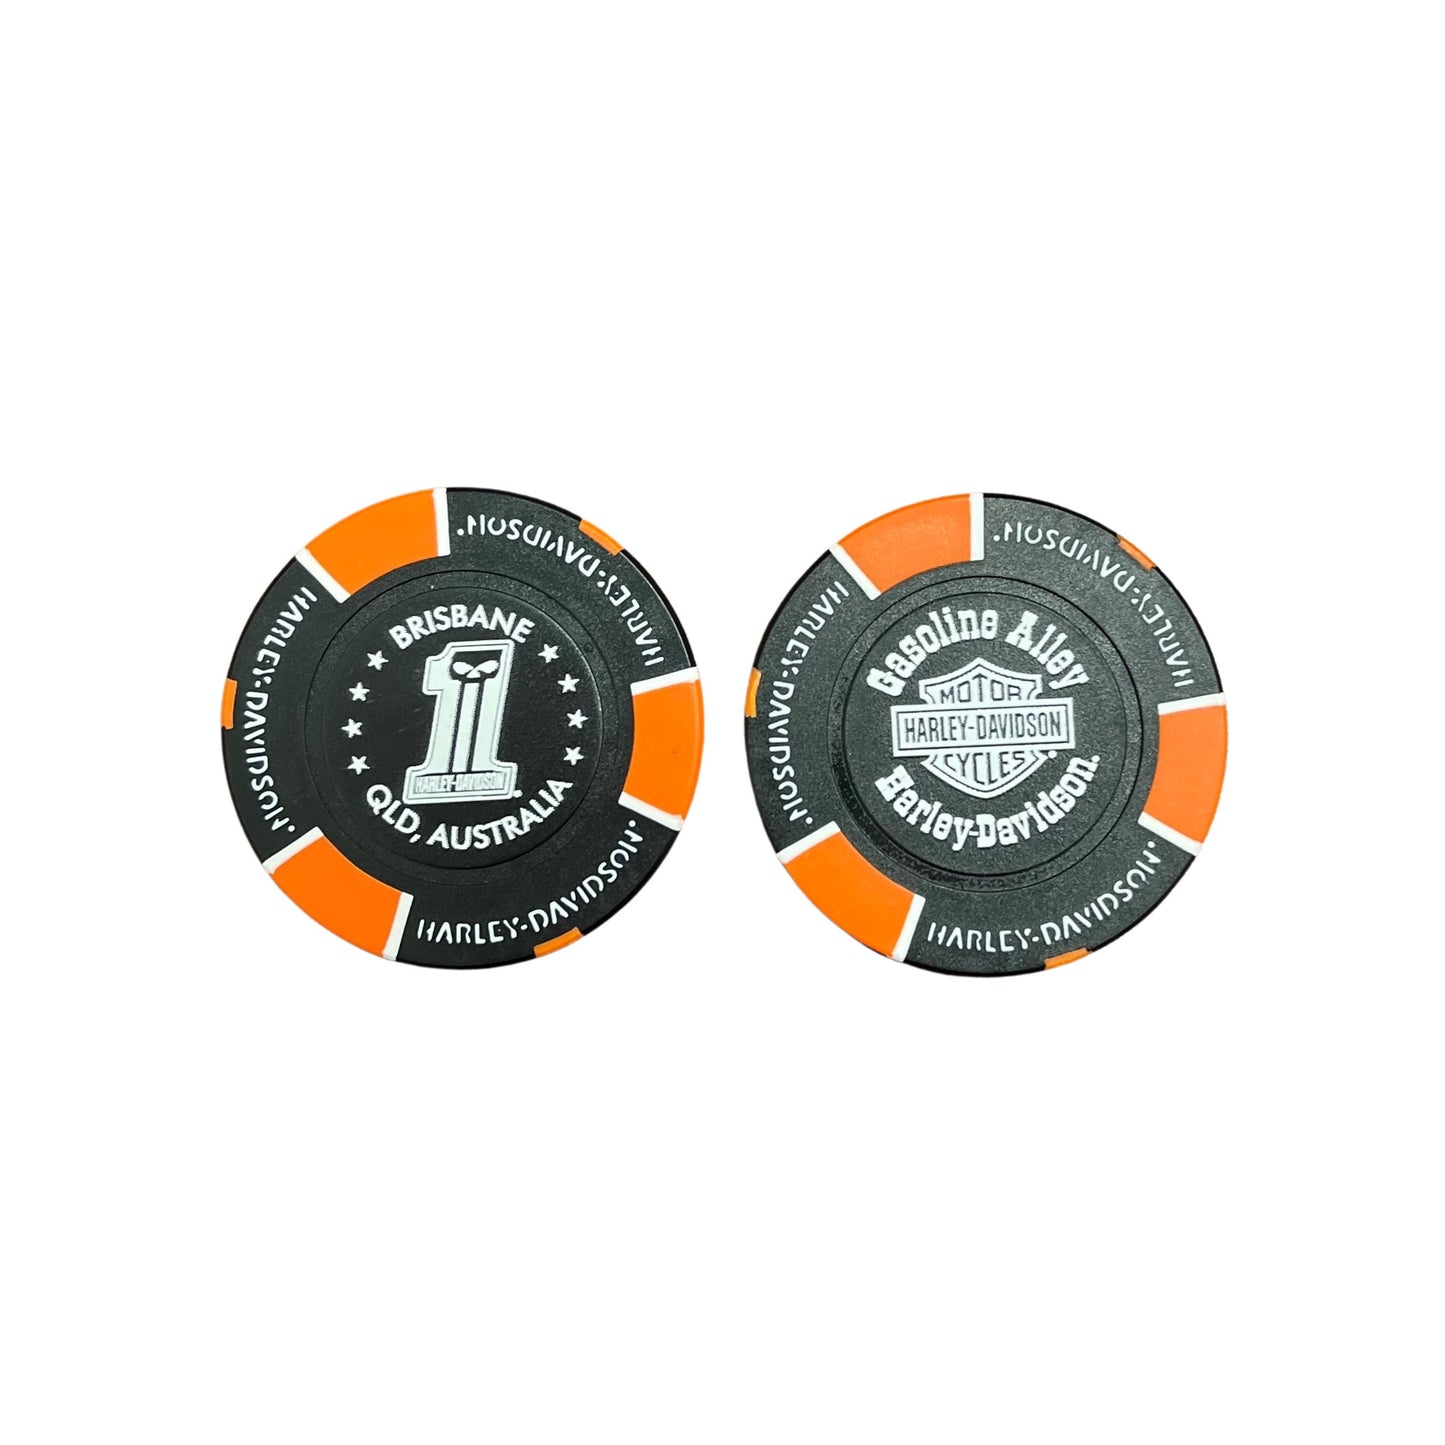 Gasoline Alley Harley-Davidson® Poker Chip – Black/Orange